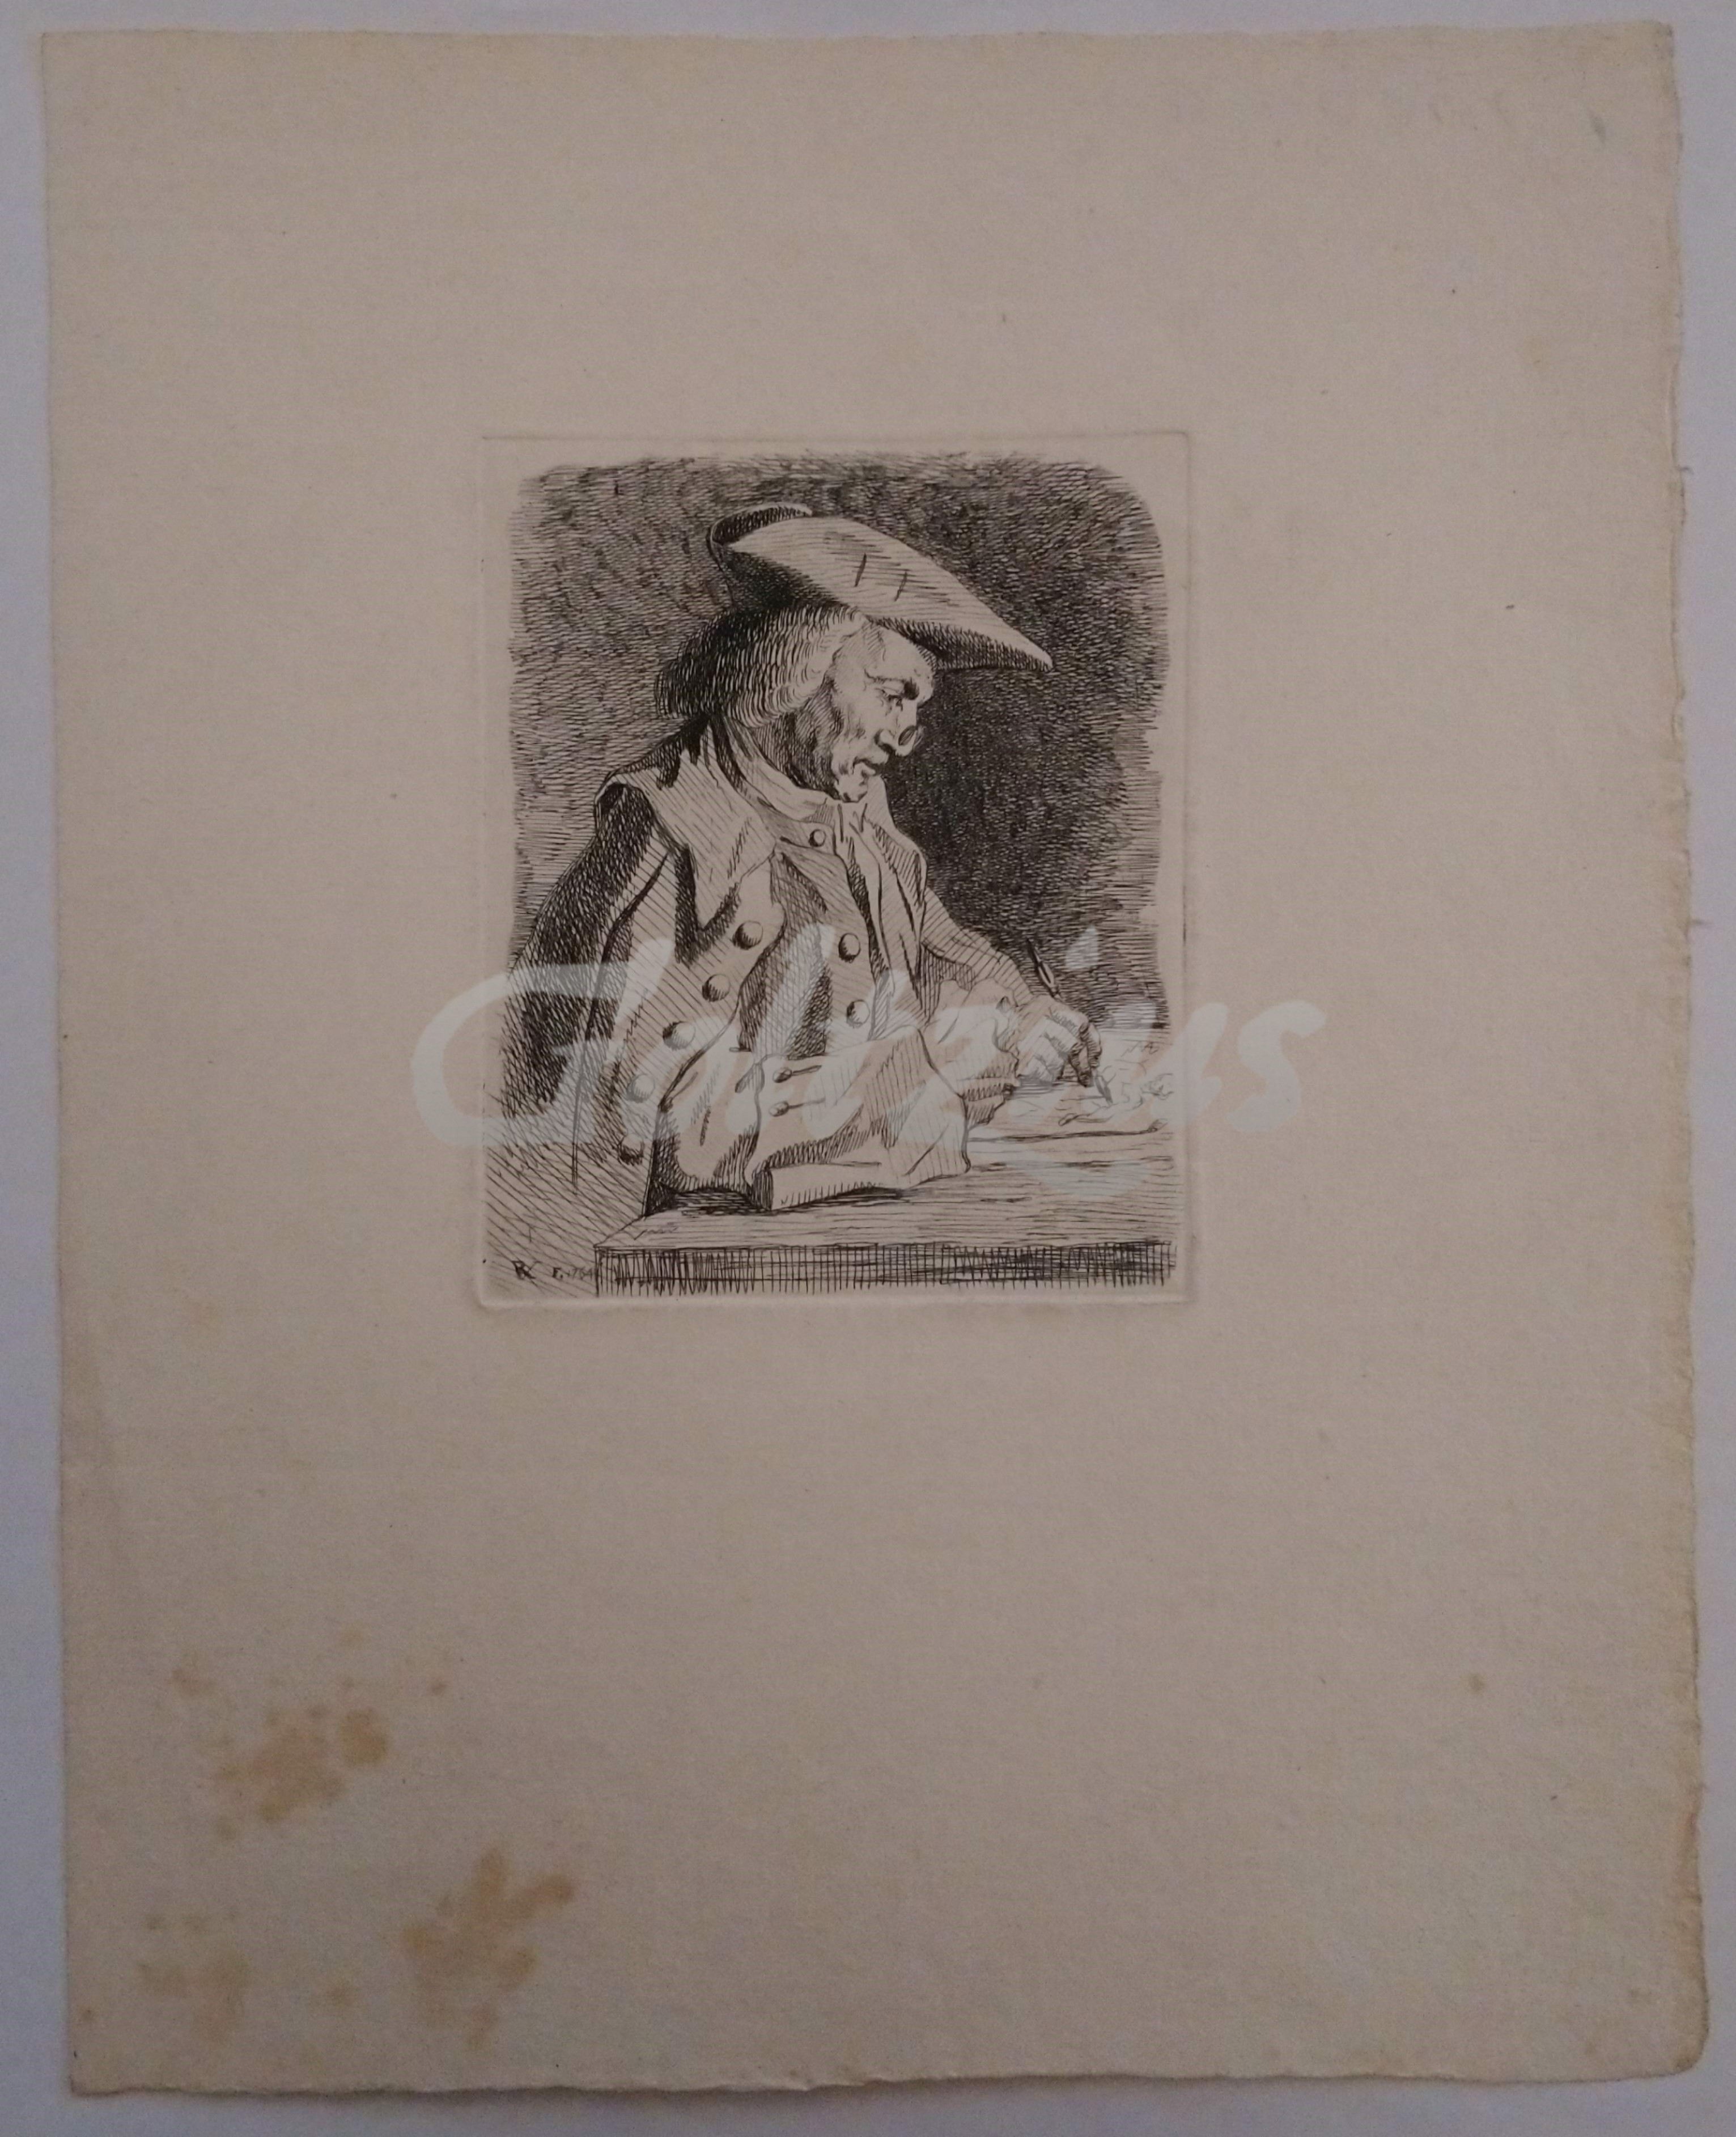 VINKELES, REINIER (1741-1816), Portrait of Abraham Dulignon